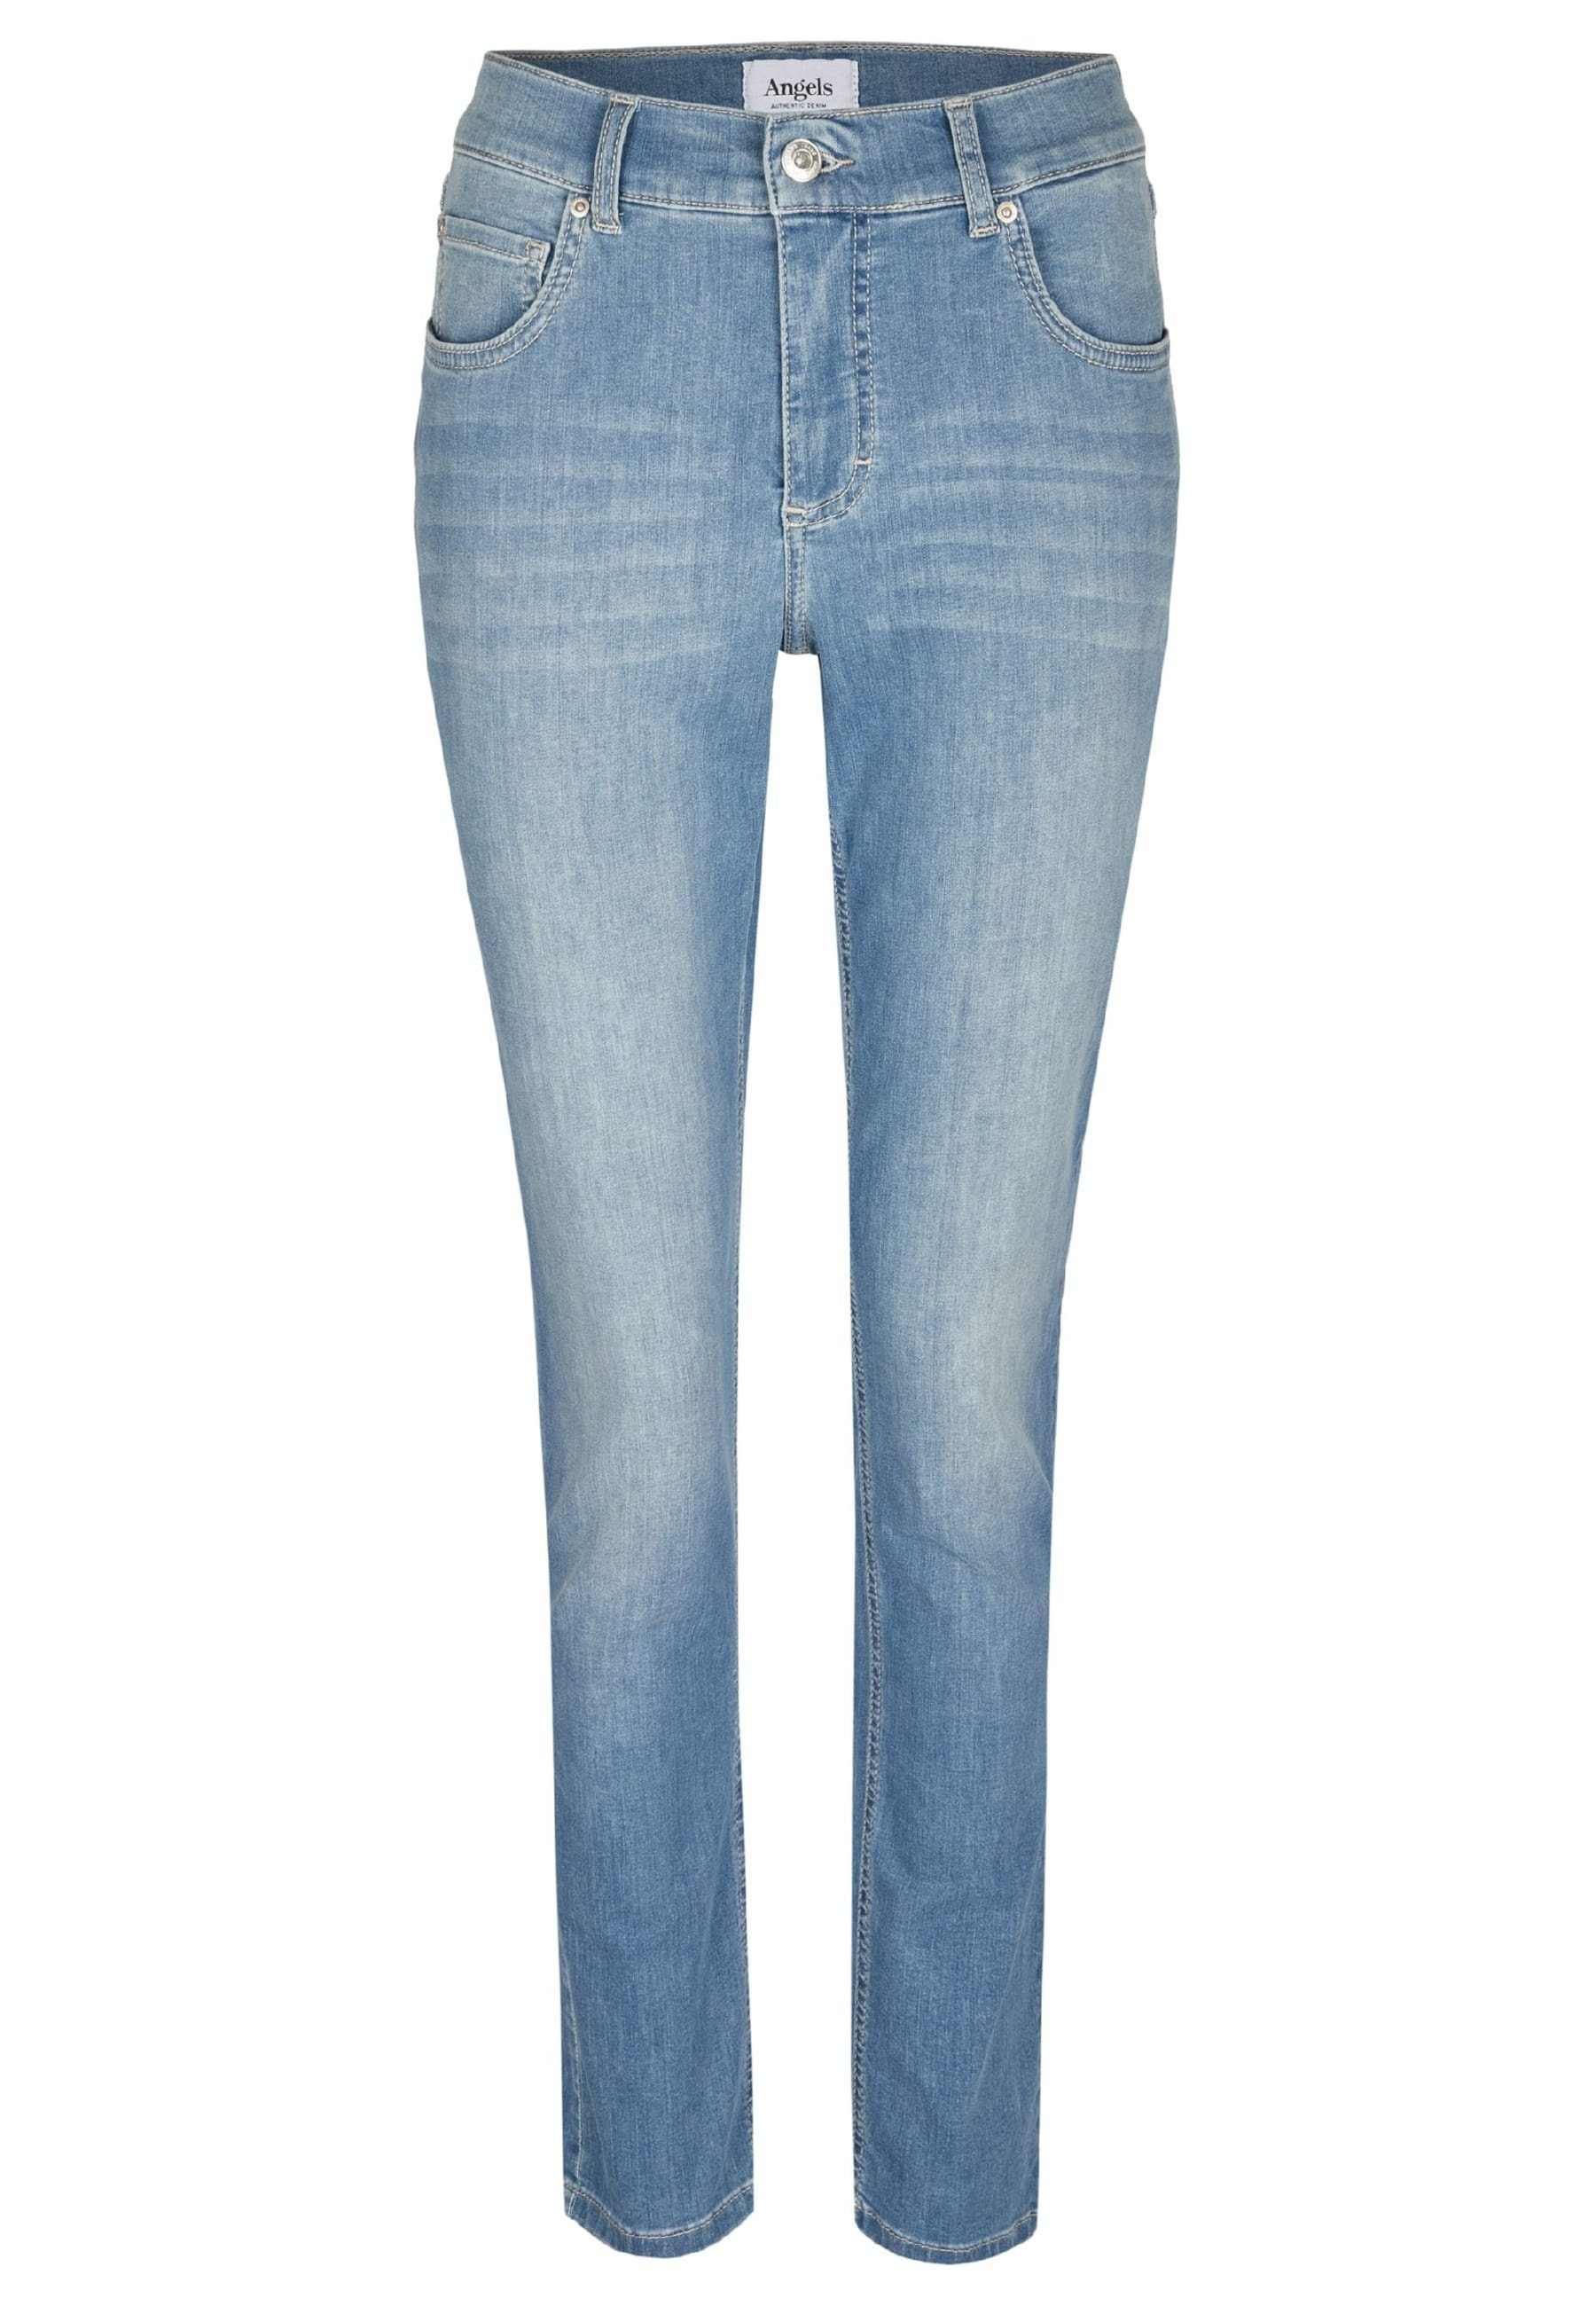 Jeans mit Label-Applikationen ANGELS hellblau Organic Slim-fit-Jeans Cotton mit Skinny